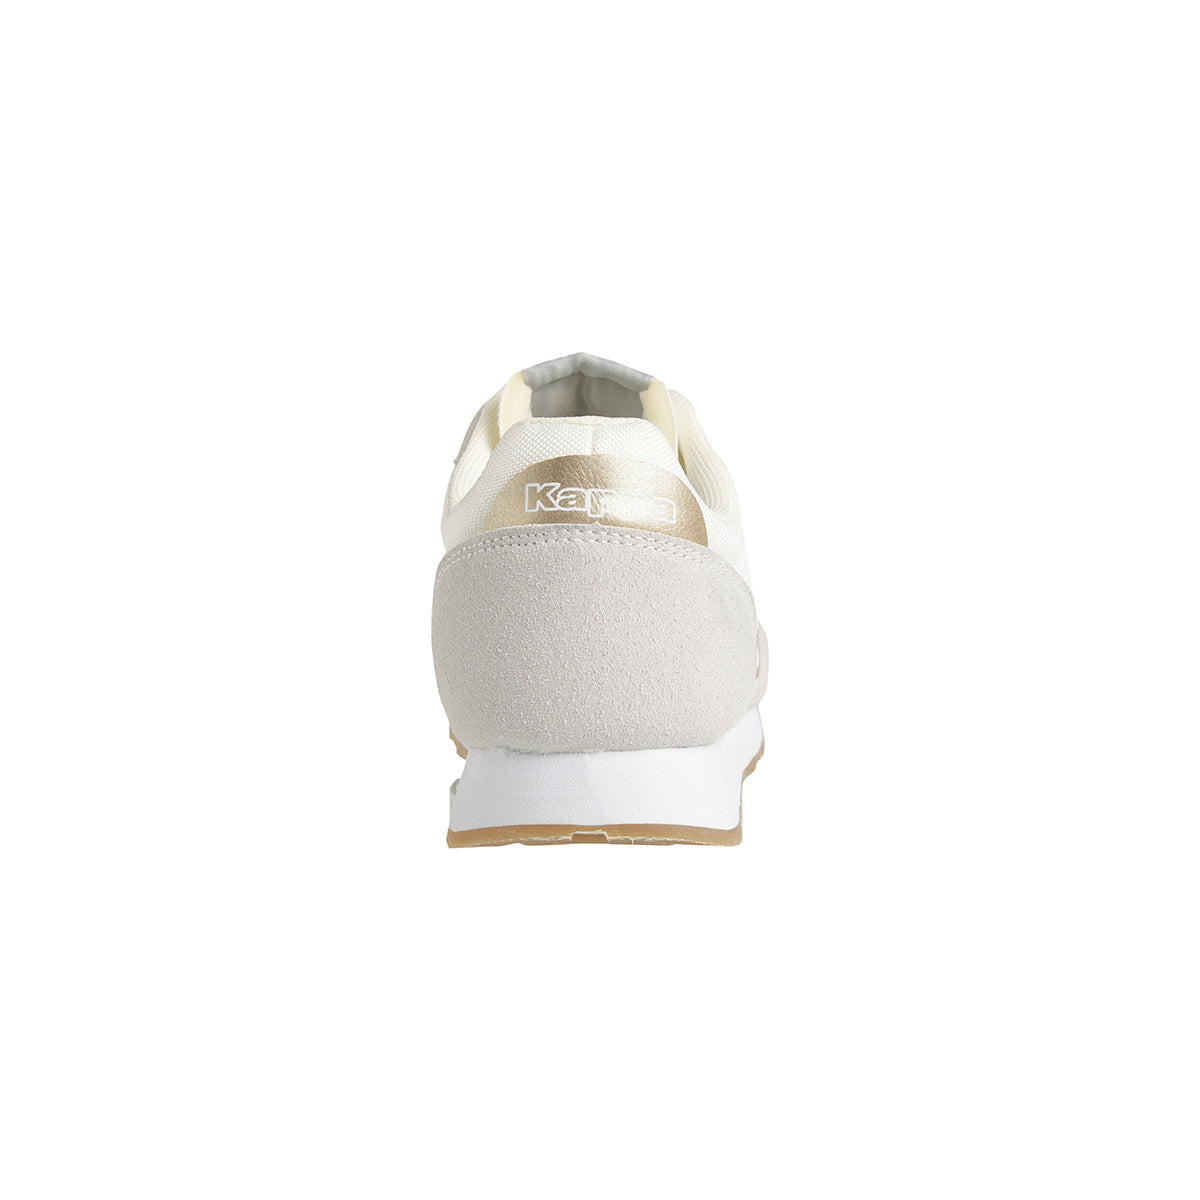 Sneakers Komaya blanc femme - Image 3